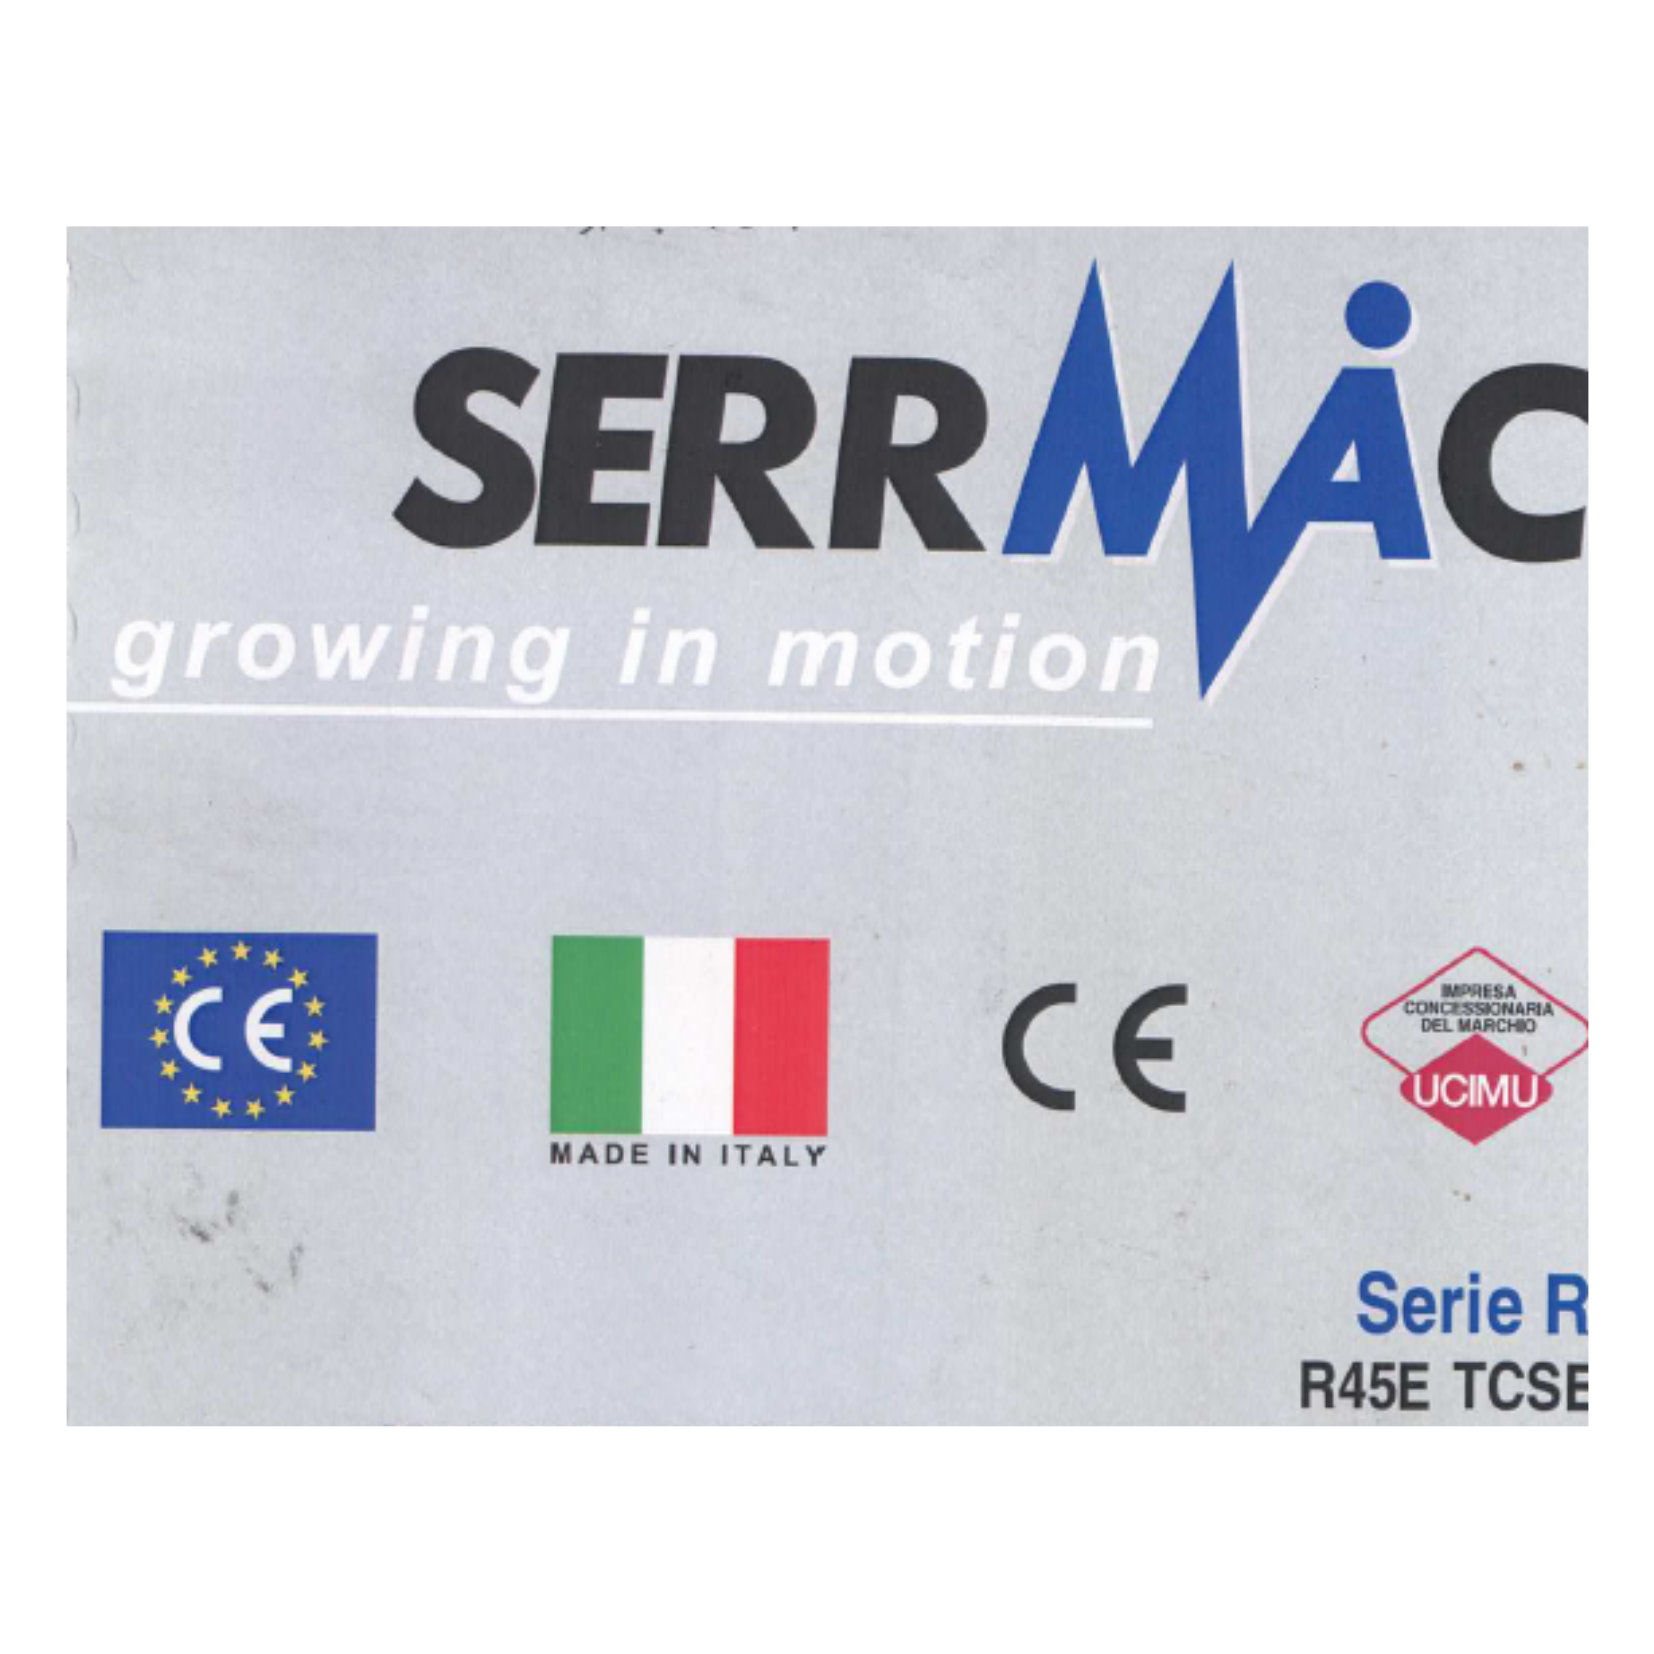 manuale trapano serrmac R45E TCSE